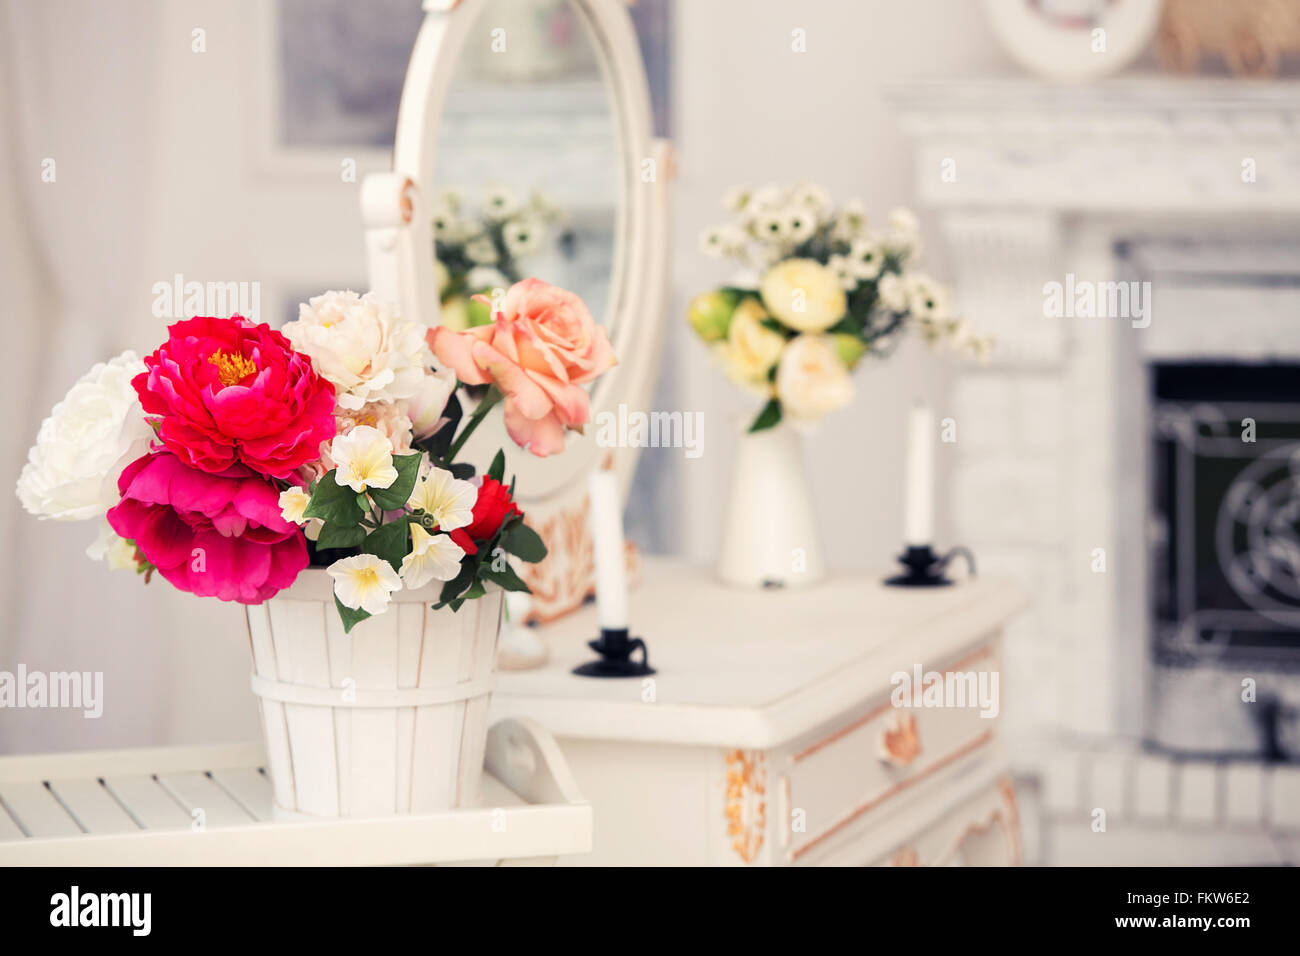 alte Frisierkommode mit Blumen geschmückt und Stuhl Stockfotografie - Alamy